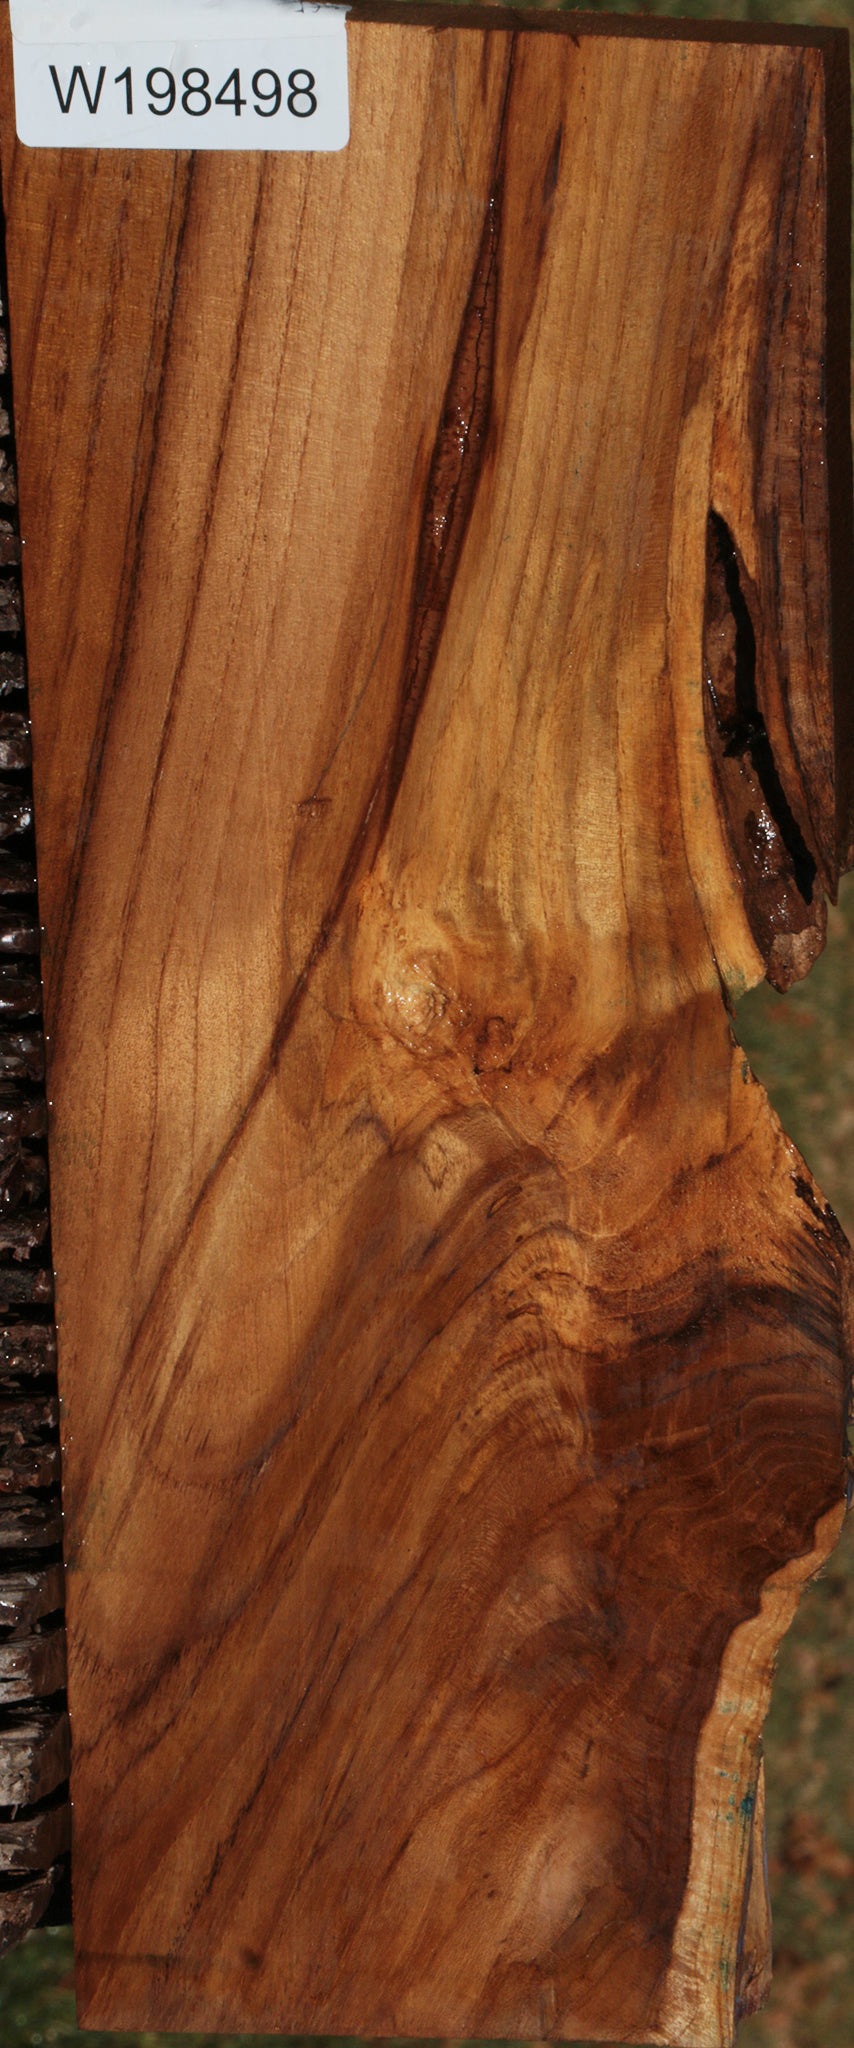 Figured Crotchwood Teak Live Edge Lumber